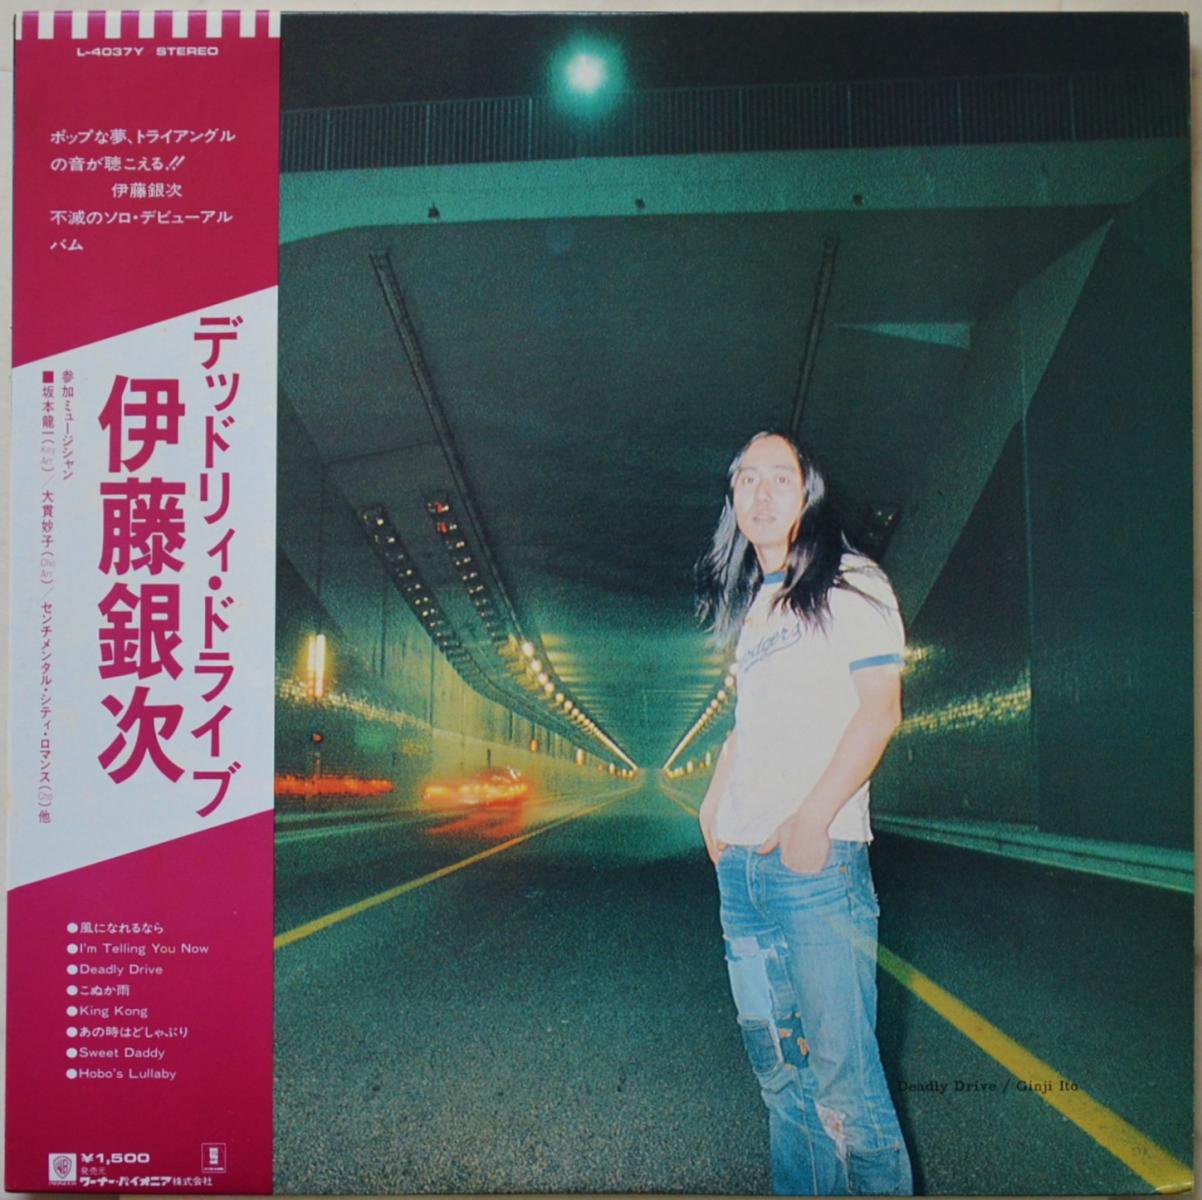 伊藤銀次 GINJI ITO / デッドリィ・ドライブ DEADLY DRIVE (LP)